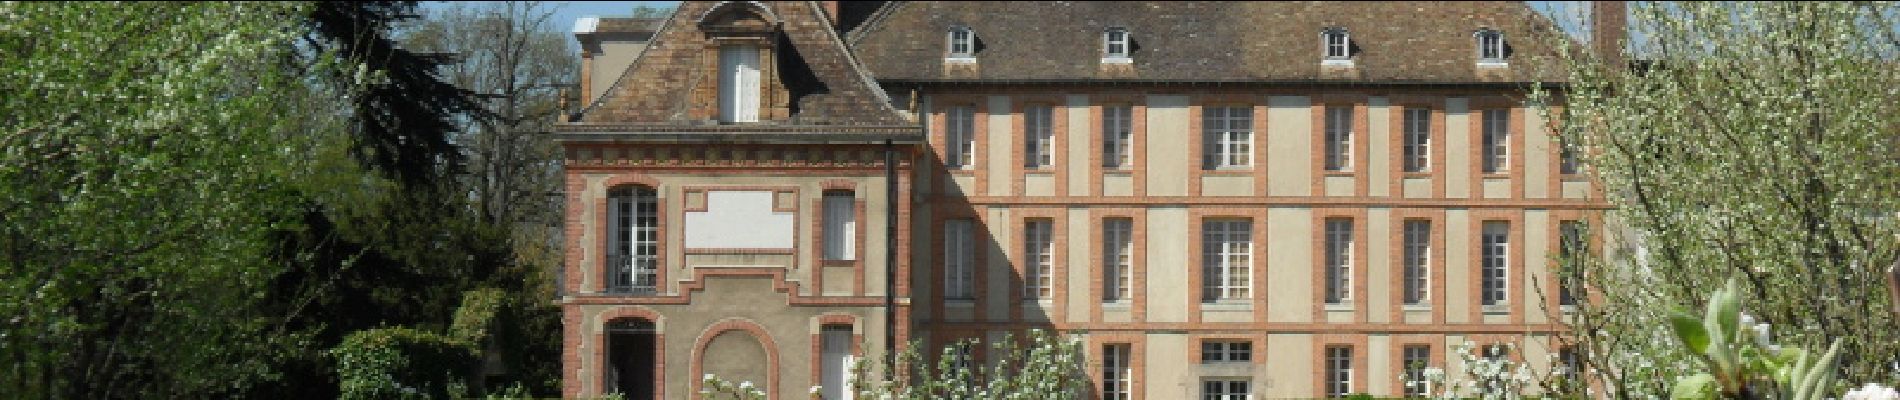 Punto de interés Magny-les-Hameaux - Musée national des Granges de Port-Royal - Photo